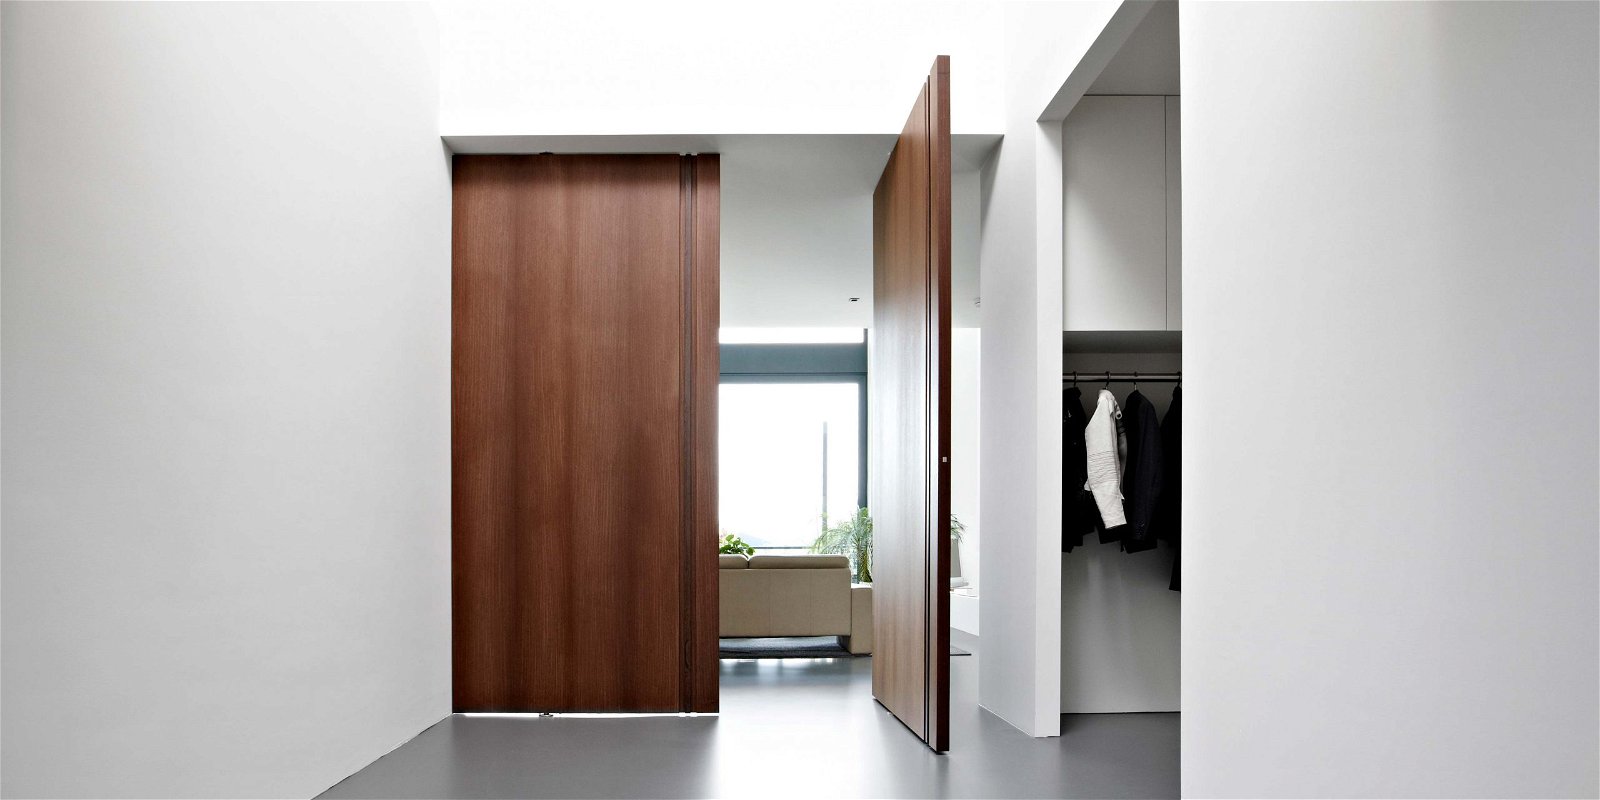 Wooden interior pivot doors with FritsJurgens pivot hinge inside